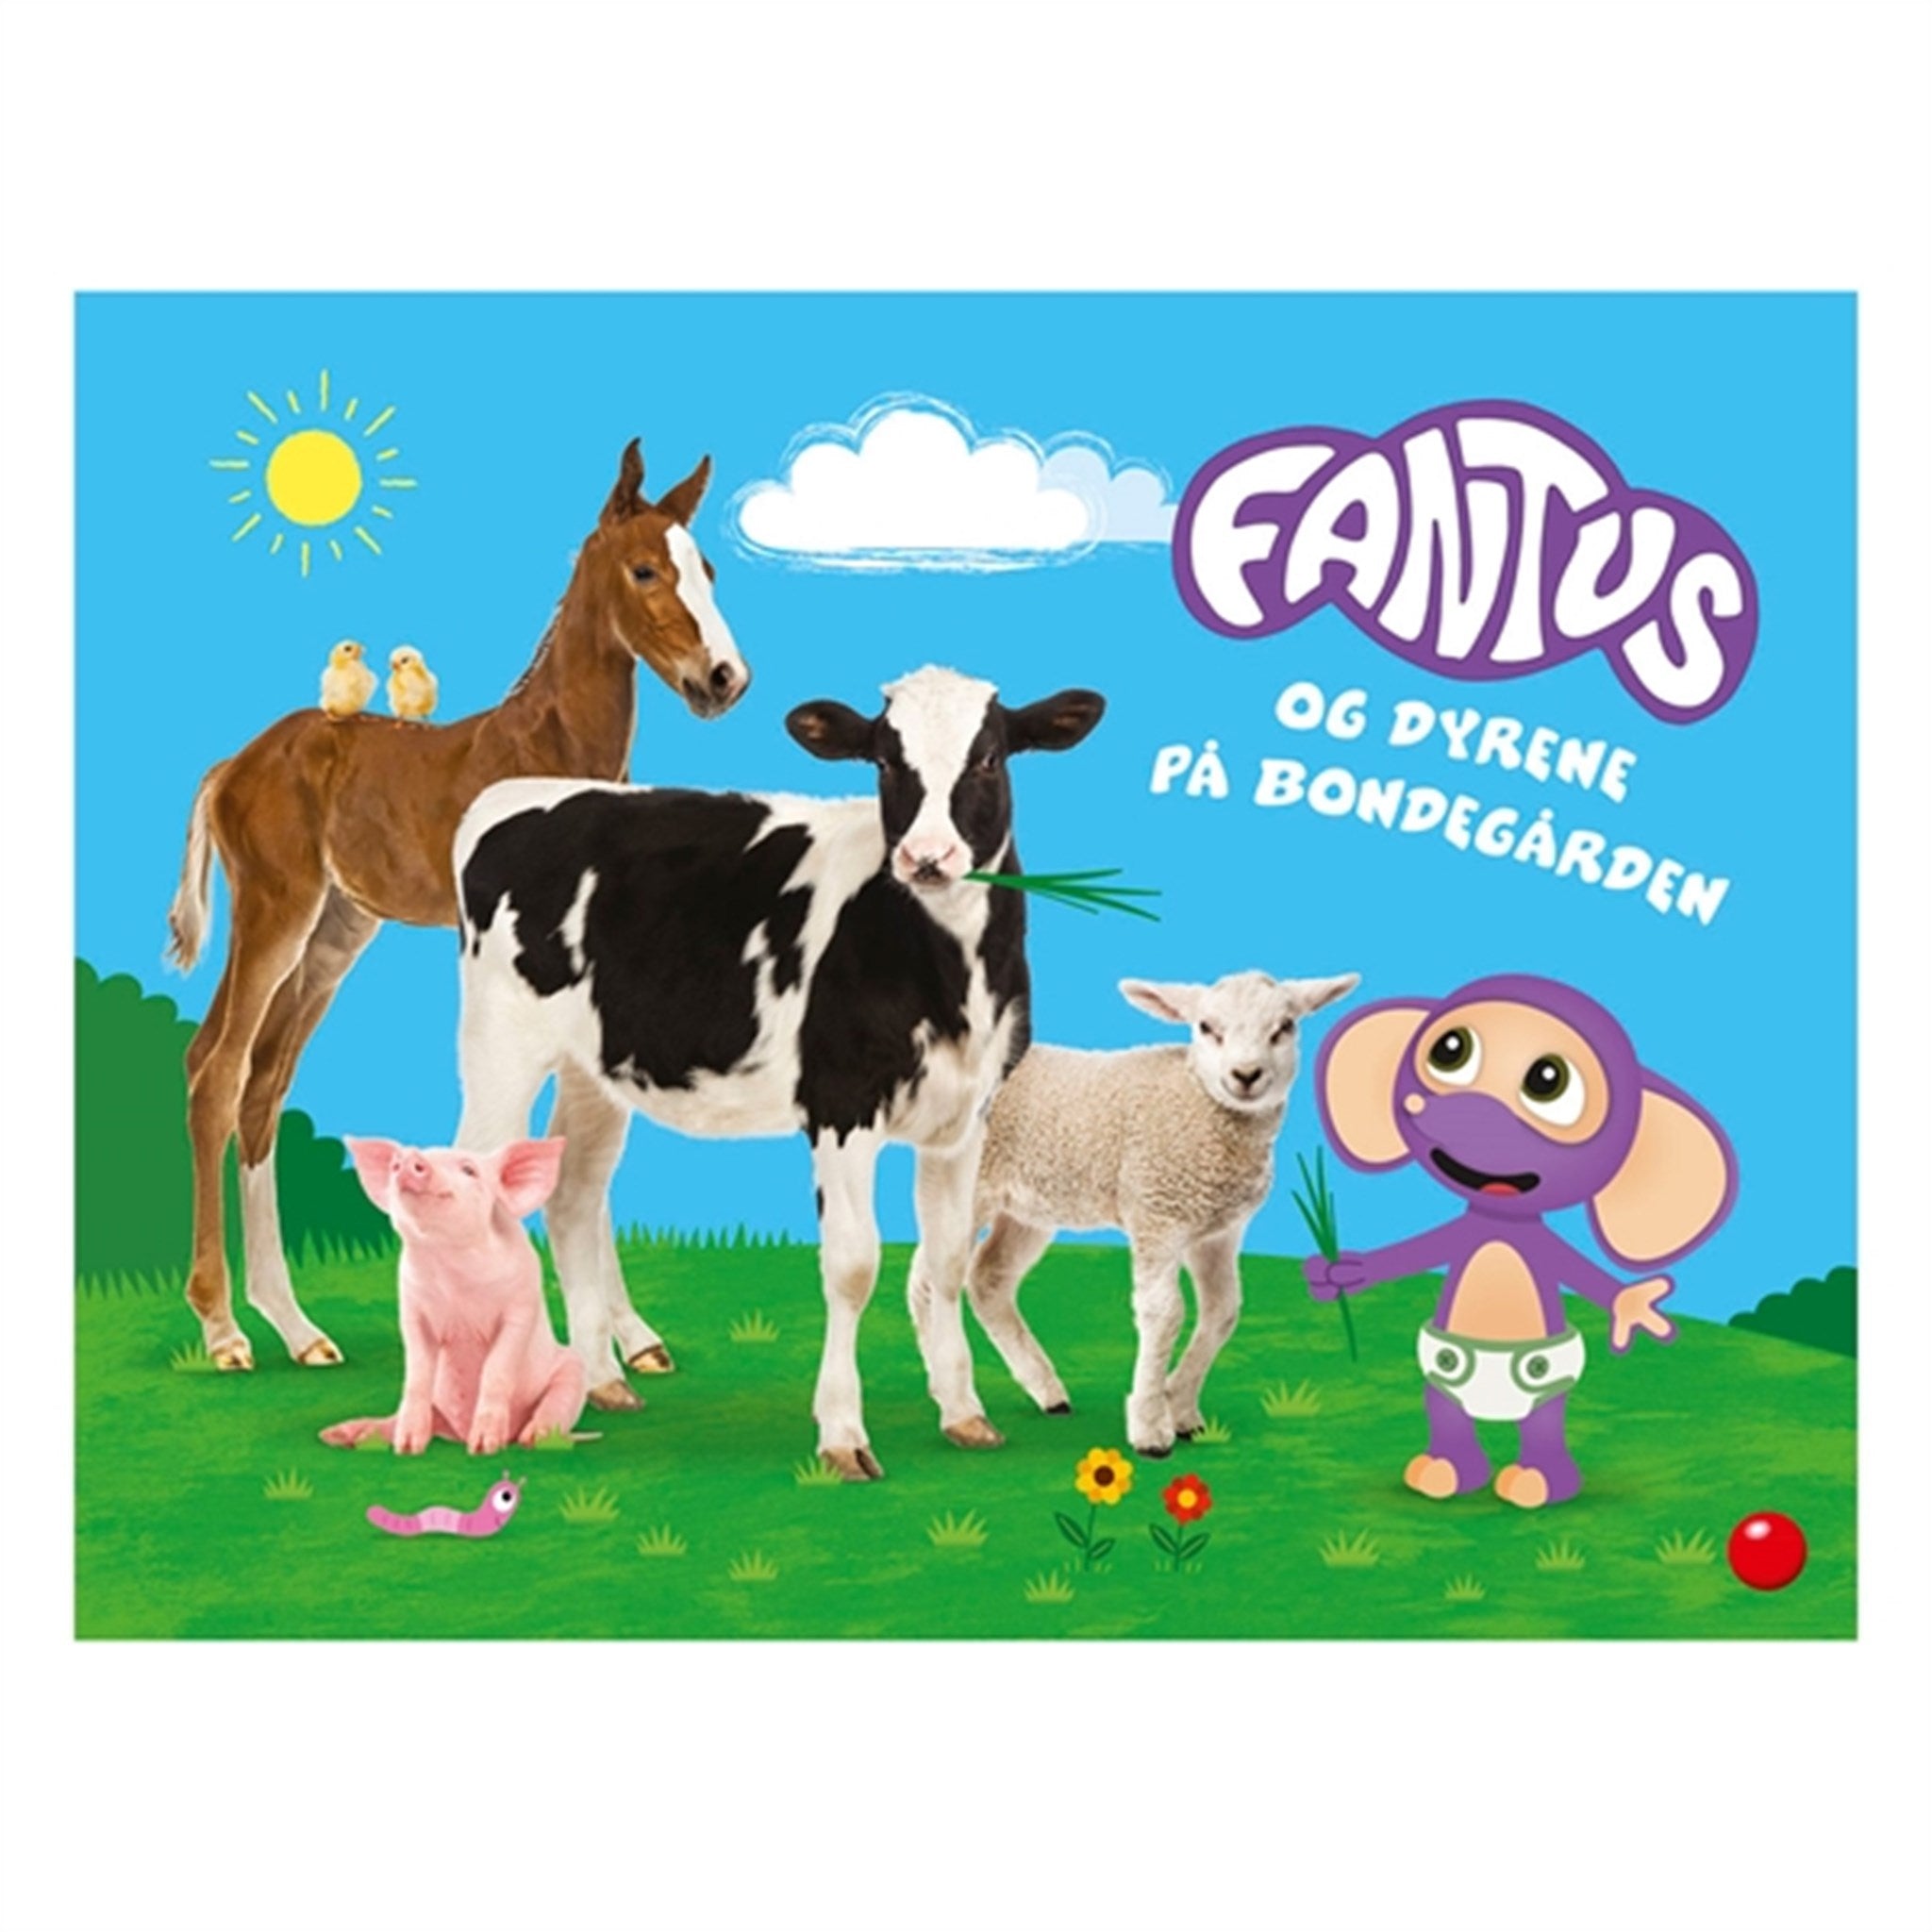 Bolden - Fantus og dyrene på bondegården